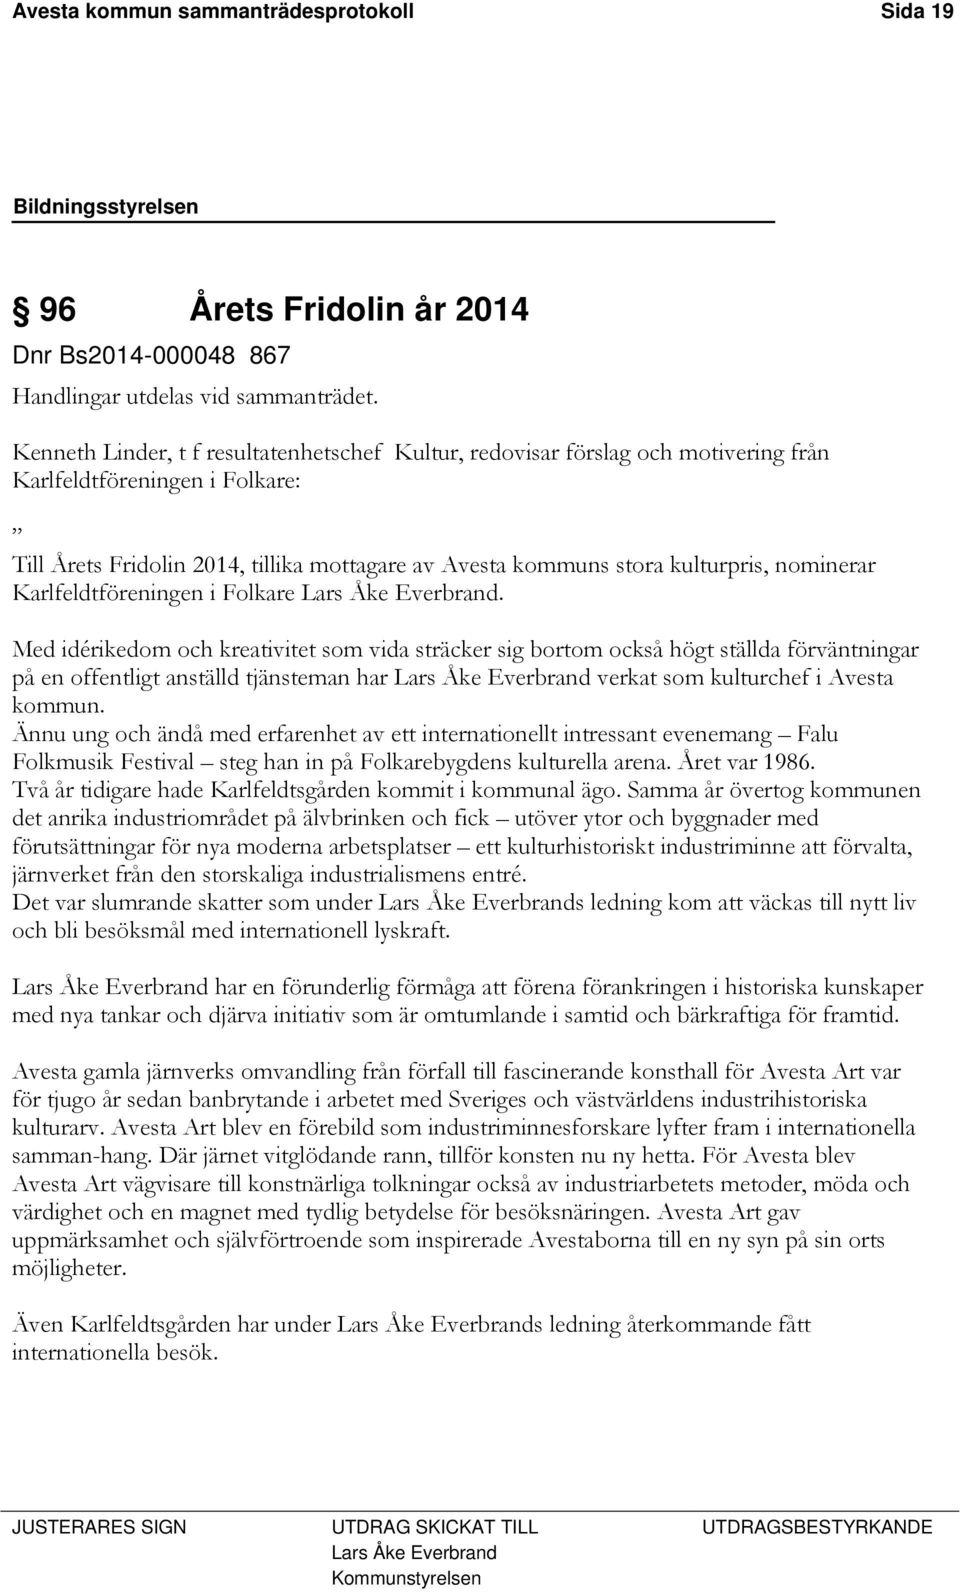 nominerar Karlfeldtföreningen i Folkare Lars Åke Everbrand.